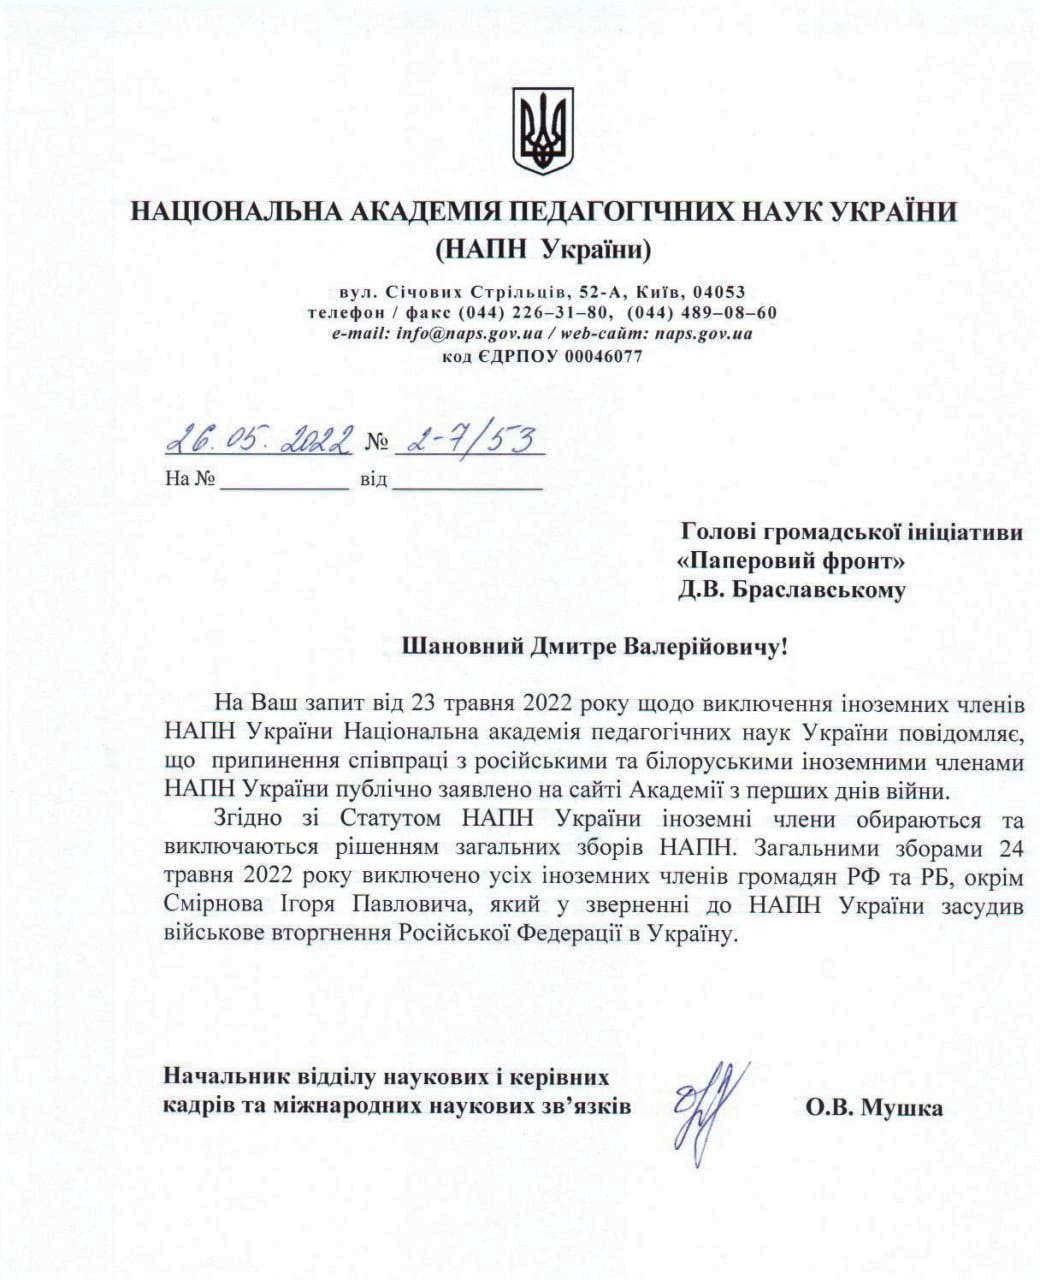 Национальная академия педагогических наук исключила всех россиян и белорусов из числа своих членов